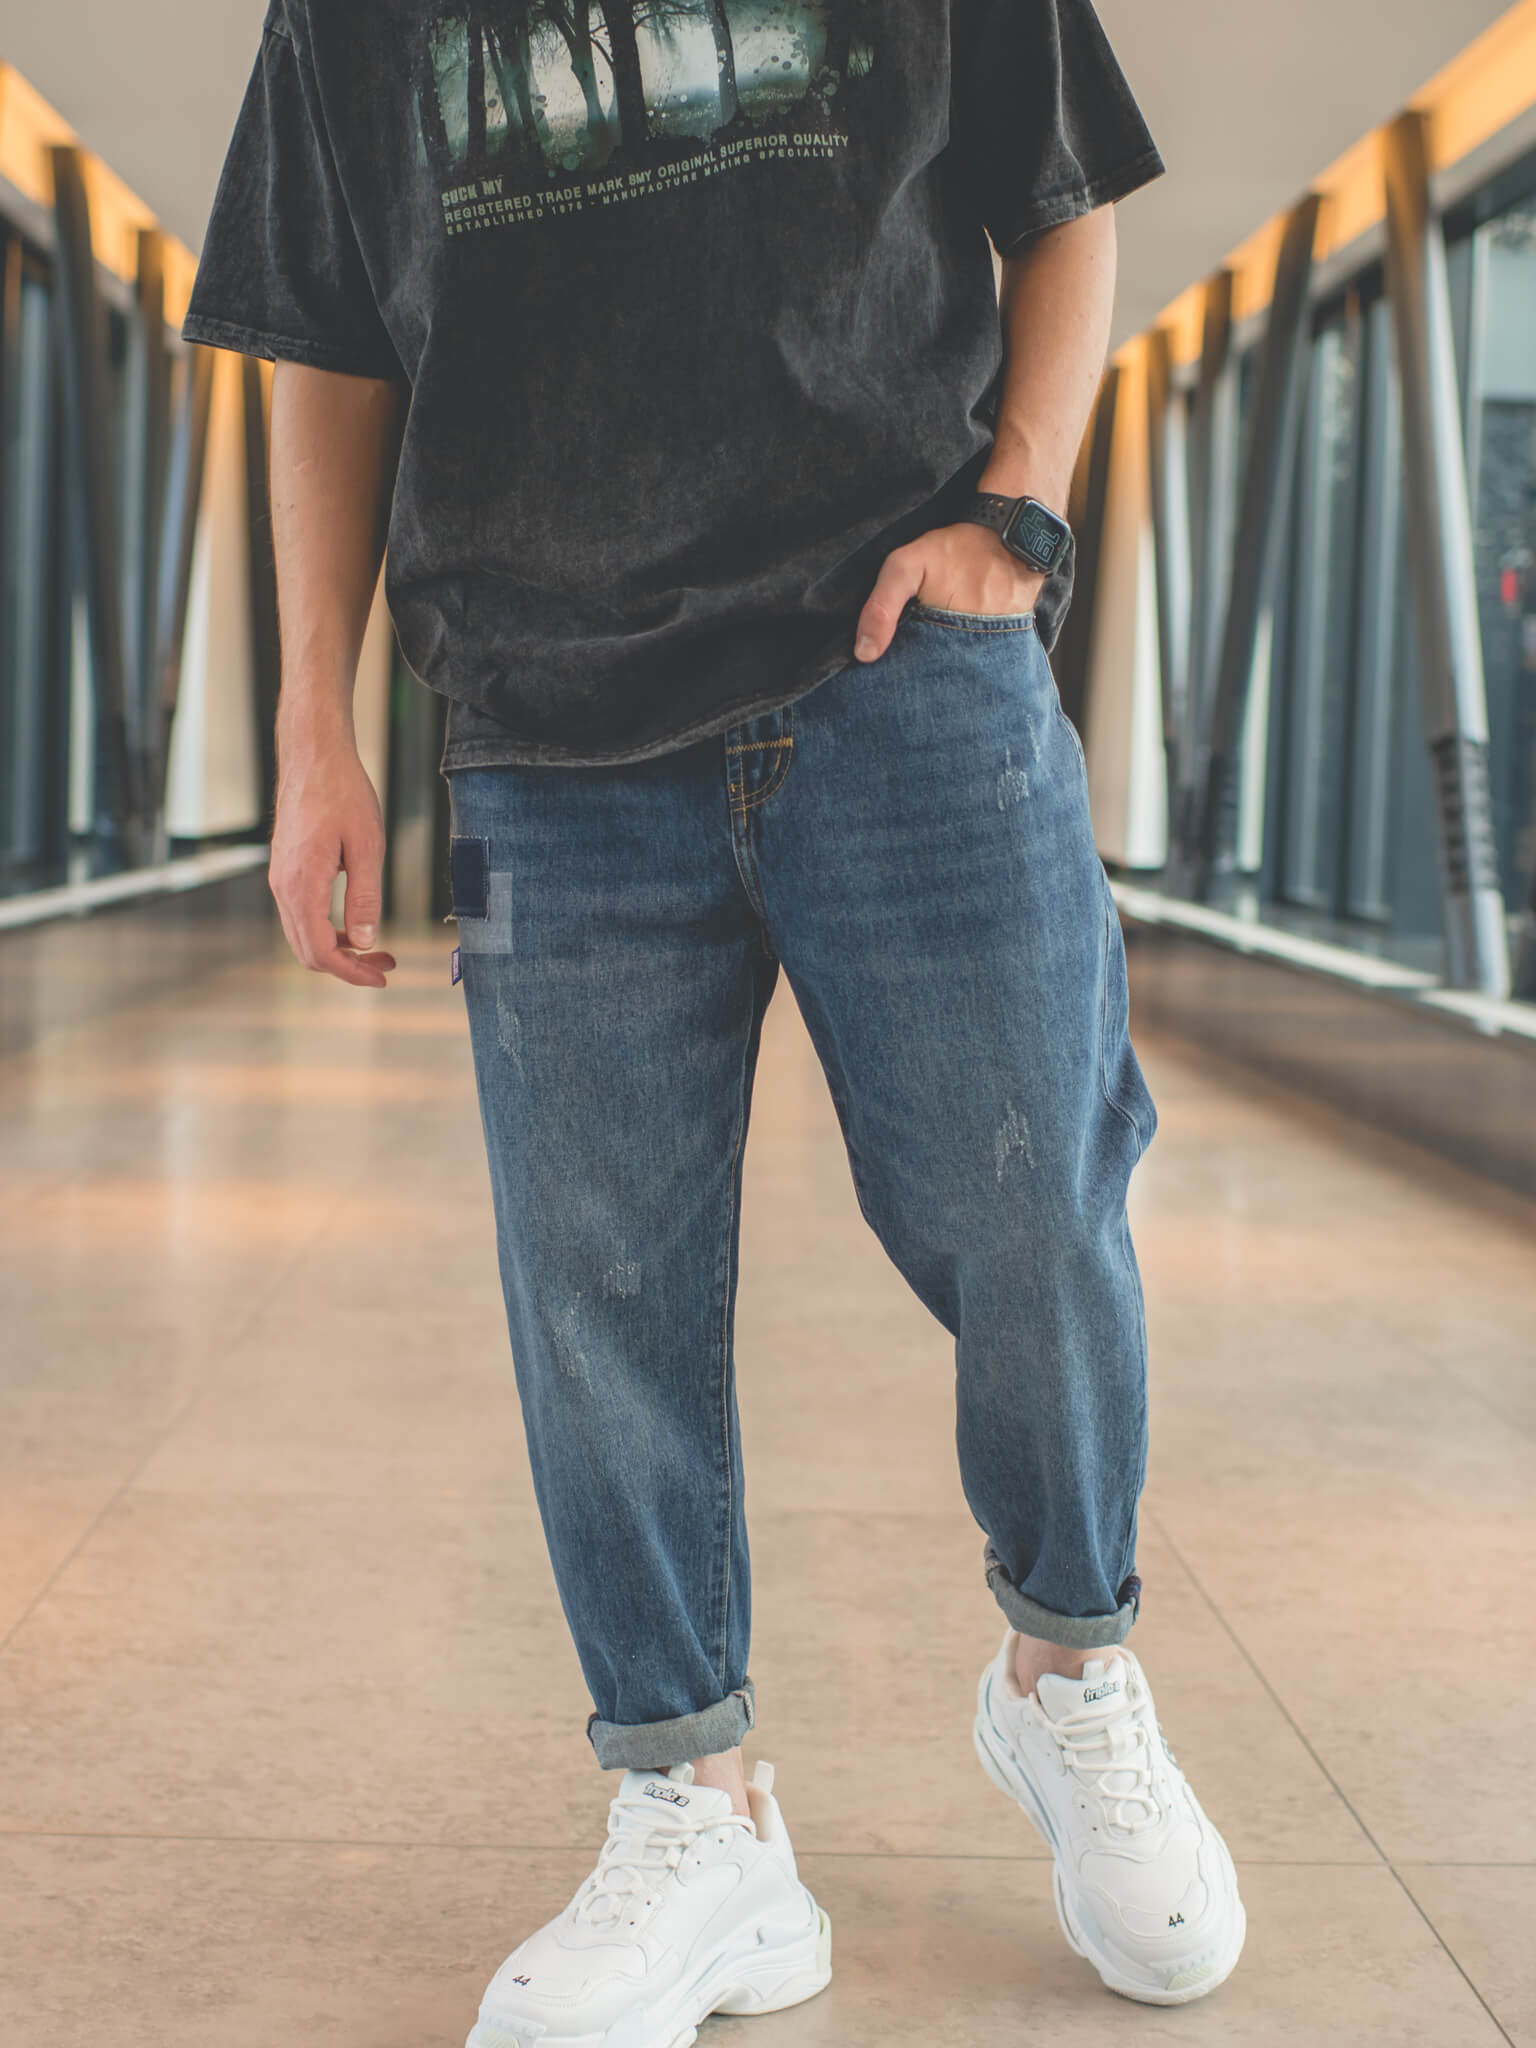 Как подворачивать джинсы (мужчинам), чтобы выглядеть круто